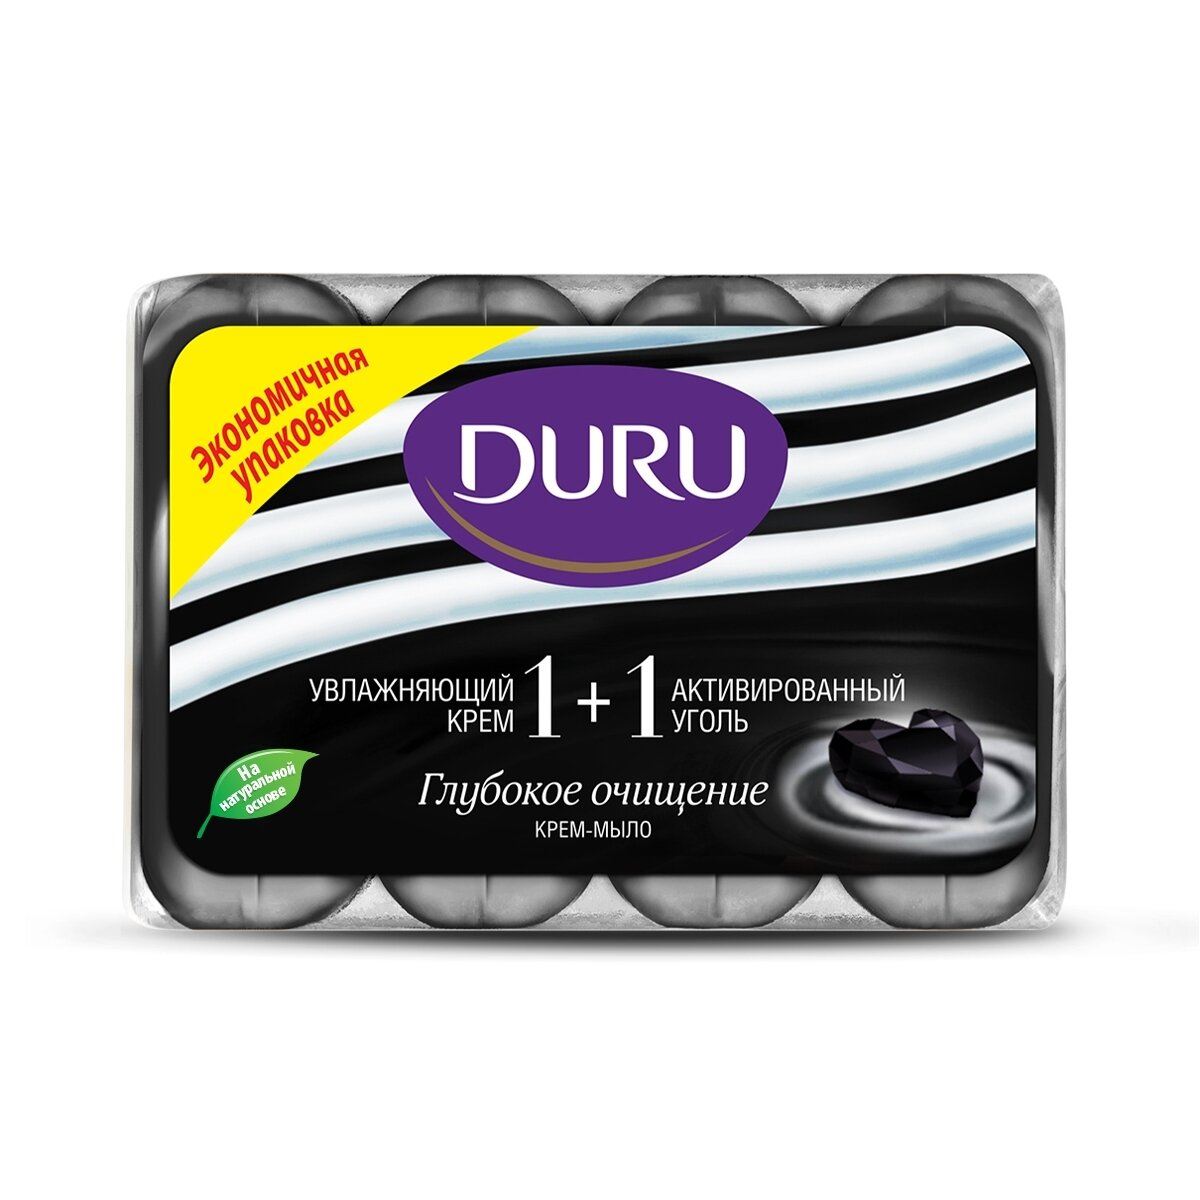 Мыло туалетное Duru 1+1 "Увлажняющий крем + активированный уголь", 4х90гр - фото №5